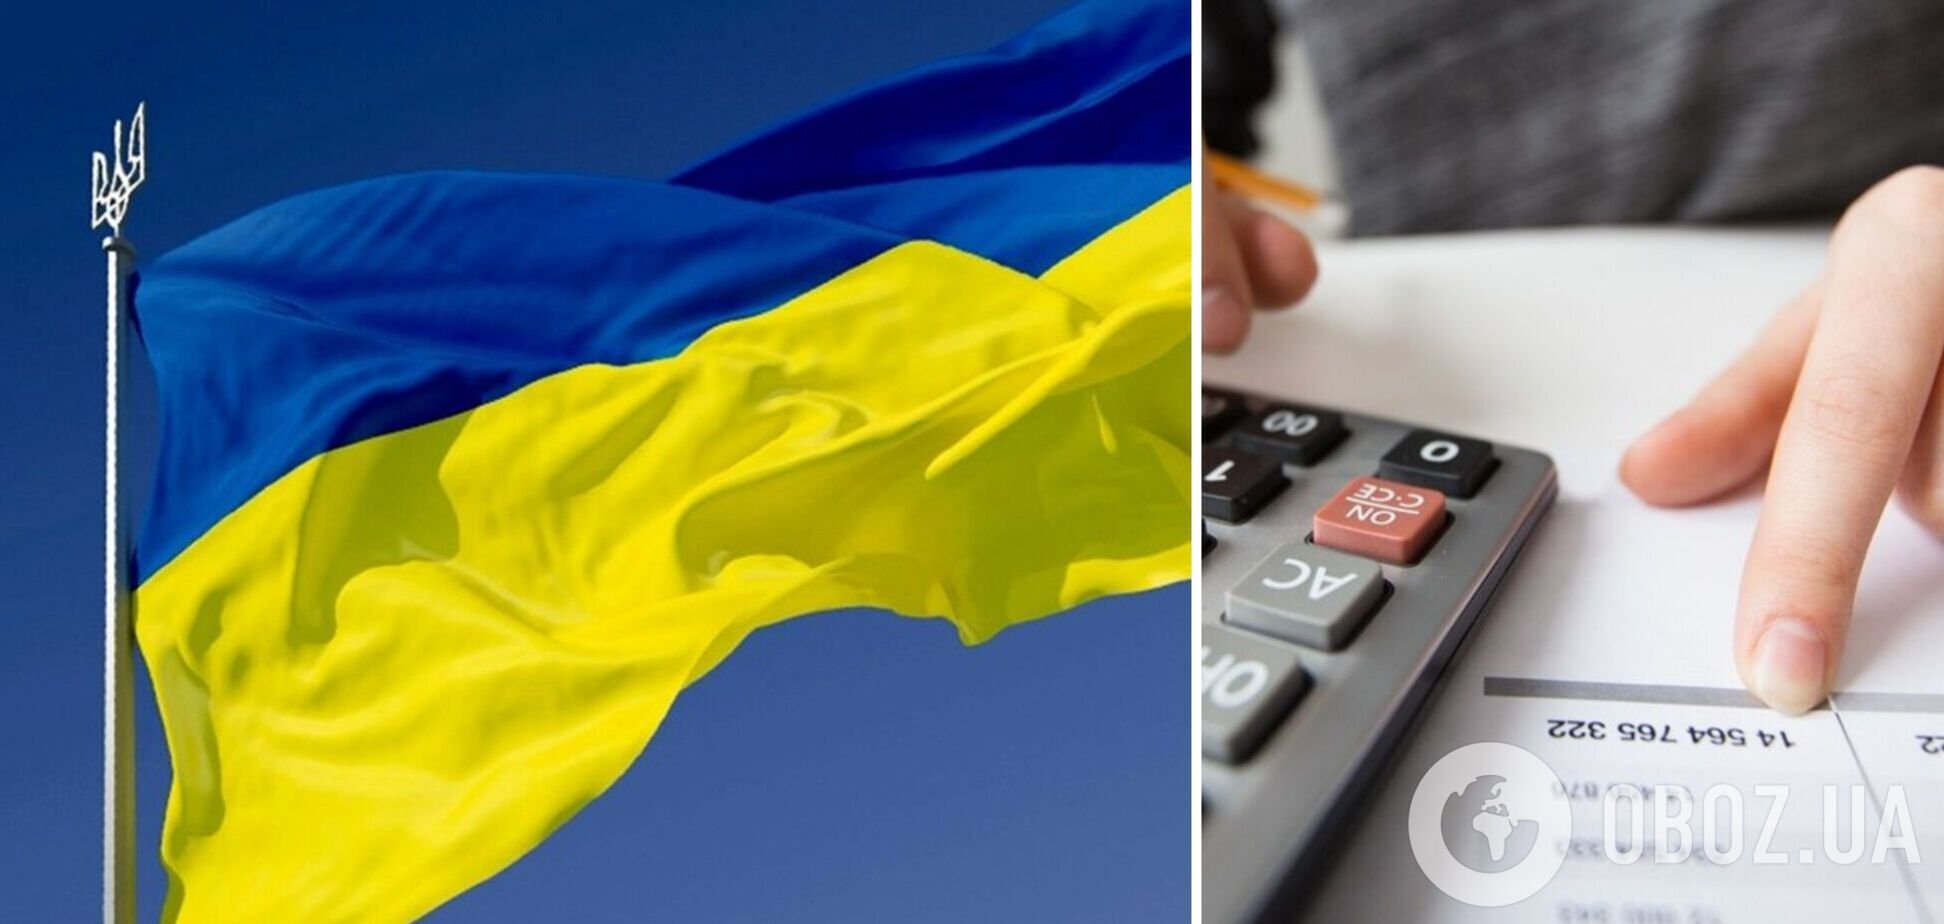 Гетманцев выразил удовлетворением прекращением в Украине разговоров об отмене налогов